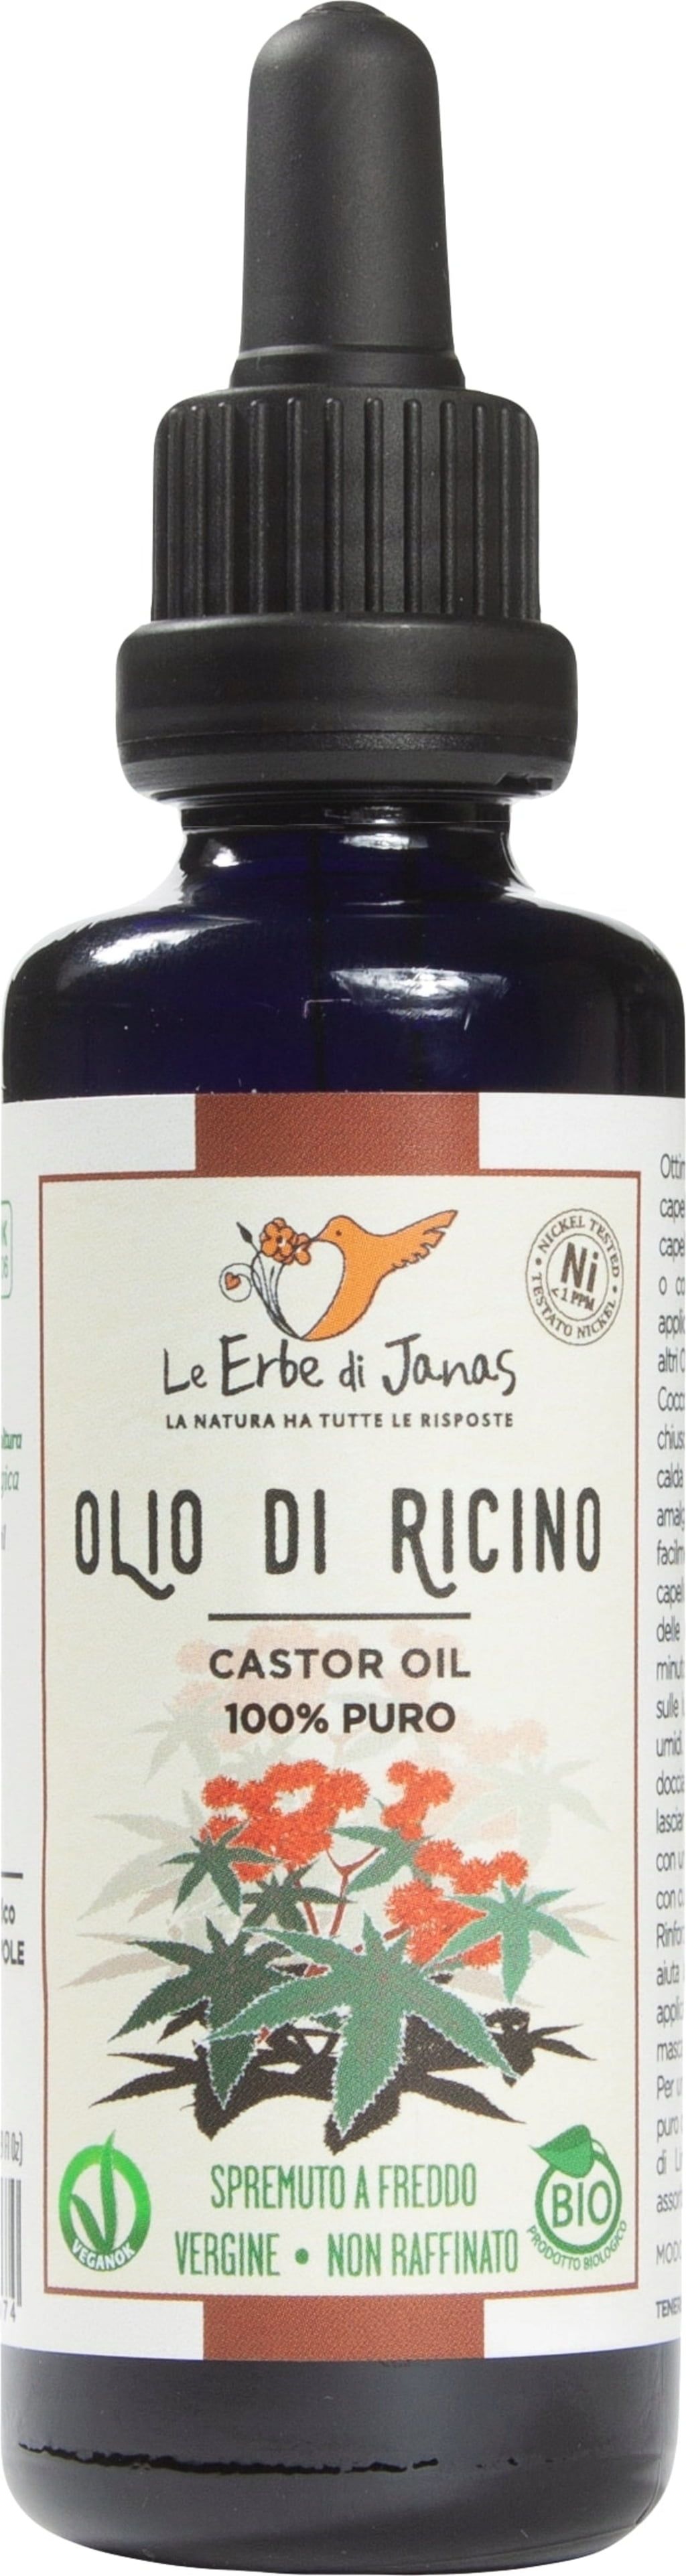 Le Erbe di Janas Castor Oil - 50 ml